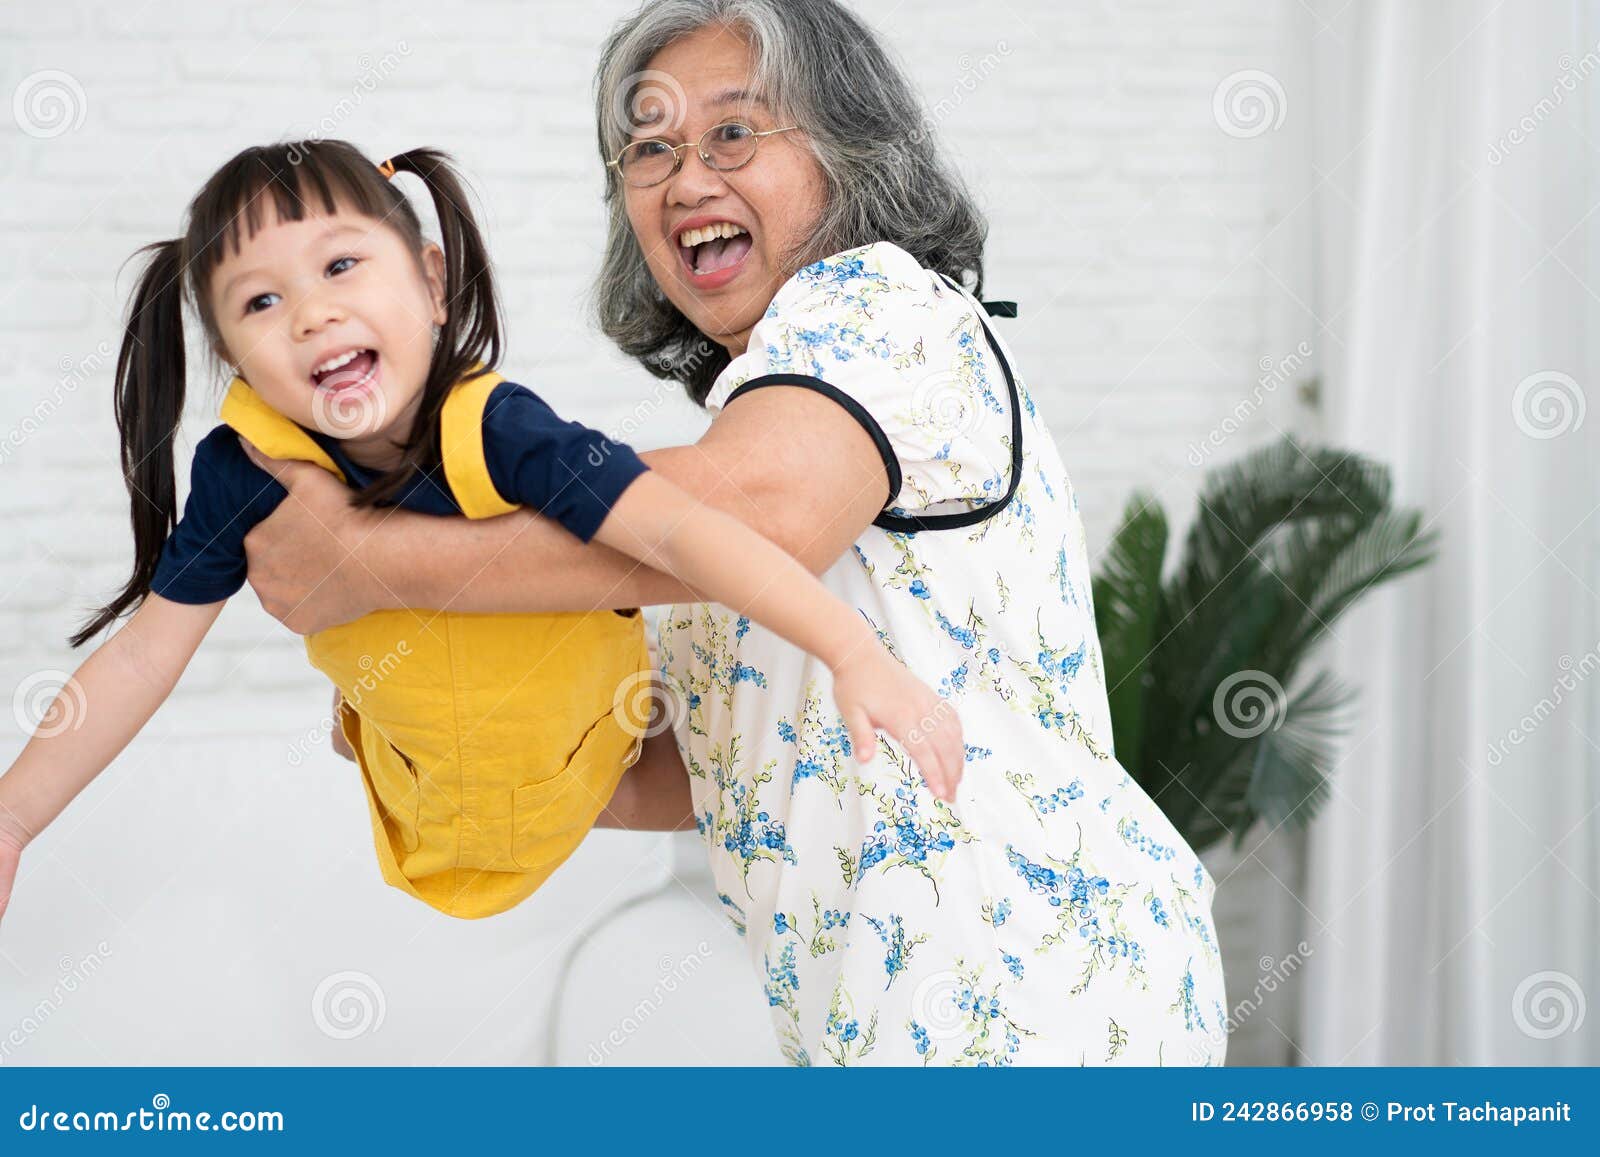 祖母和孙女 库存照片. 图片 包括有 老婆婆, 内部, 家庭, 祖母, 指示, 女性, 祖父项, 查找 - 159099354